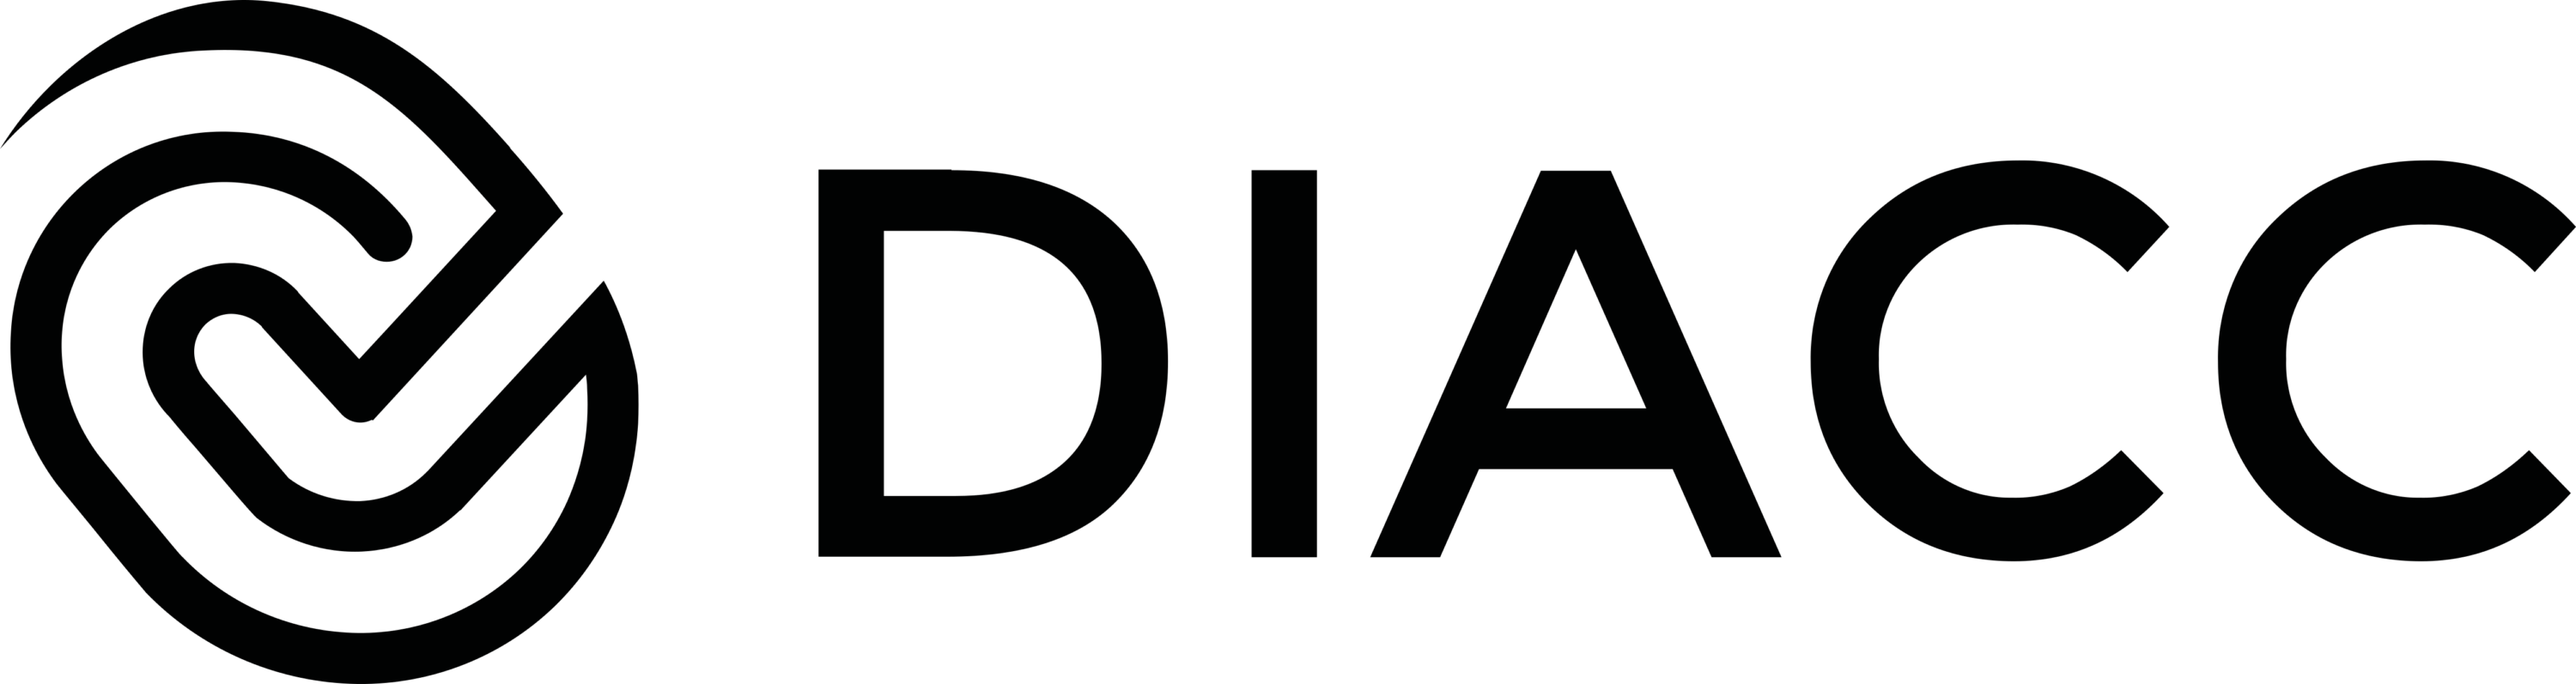 Diacc Logo